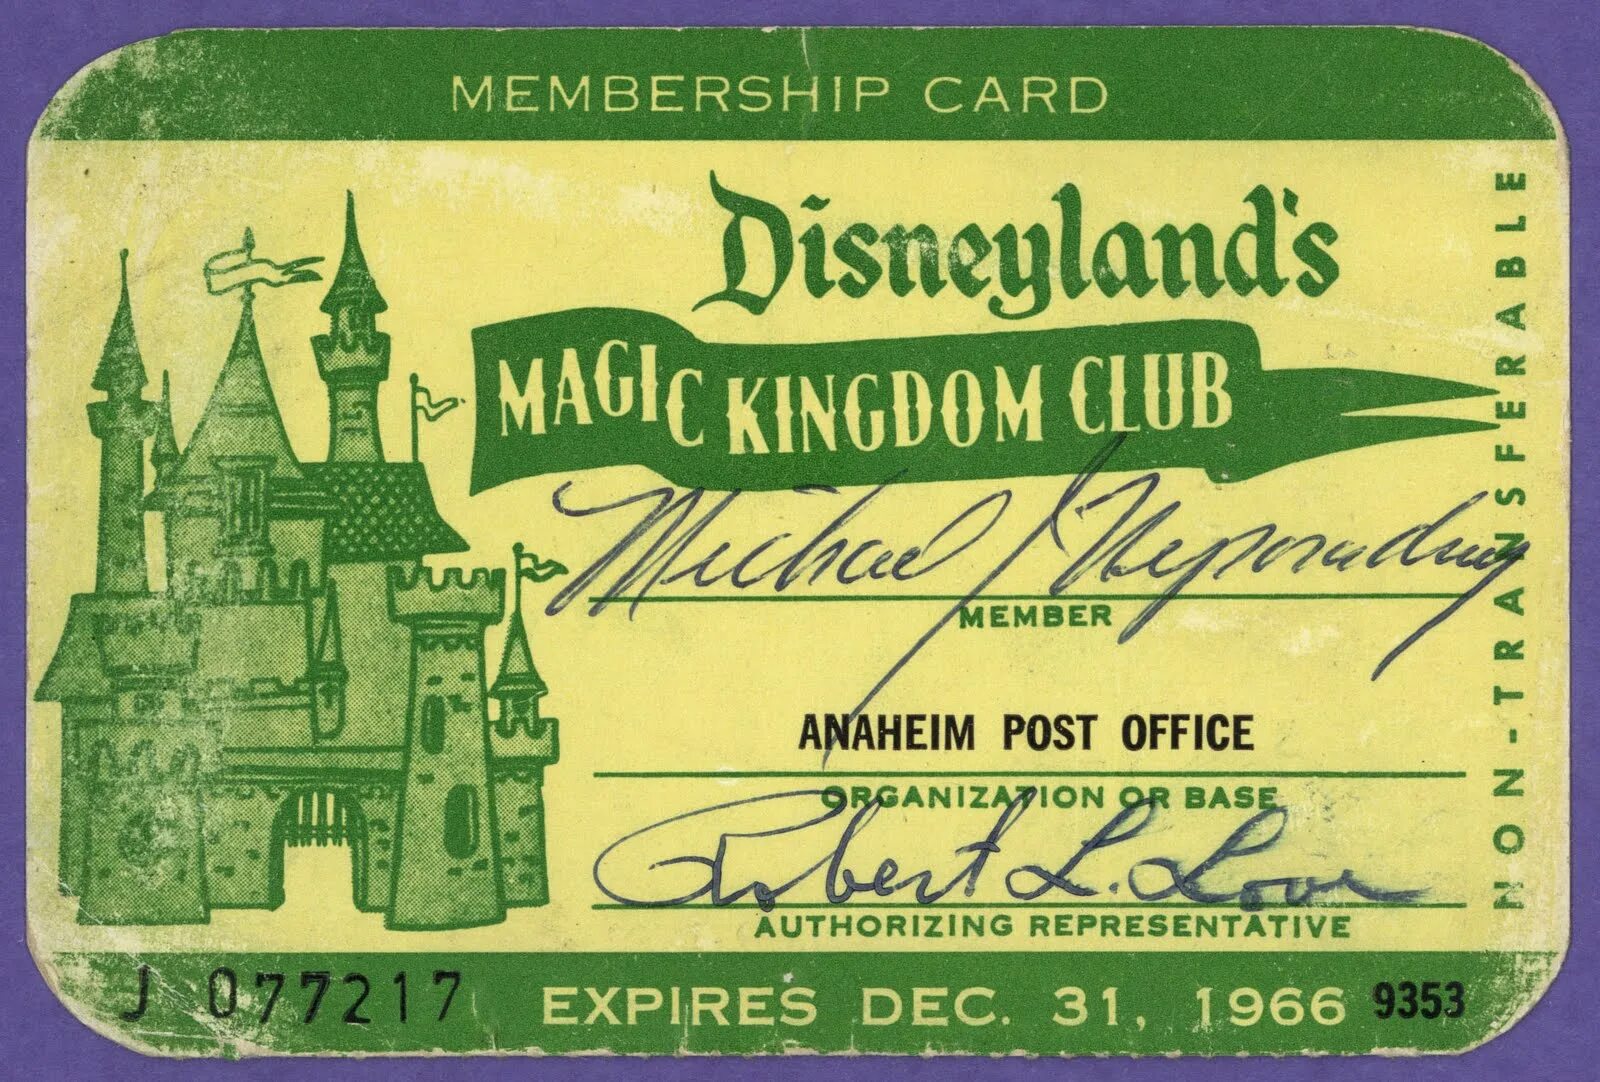 Membership Card. Membership Card образец. A membership Card picture. Membership Card for the Club.